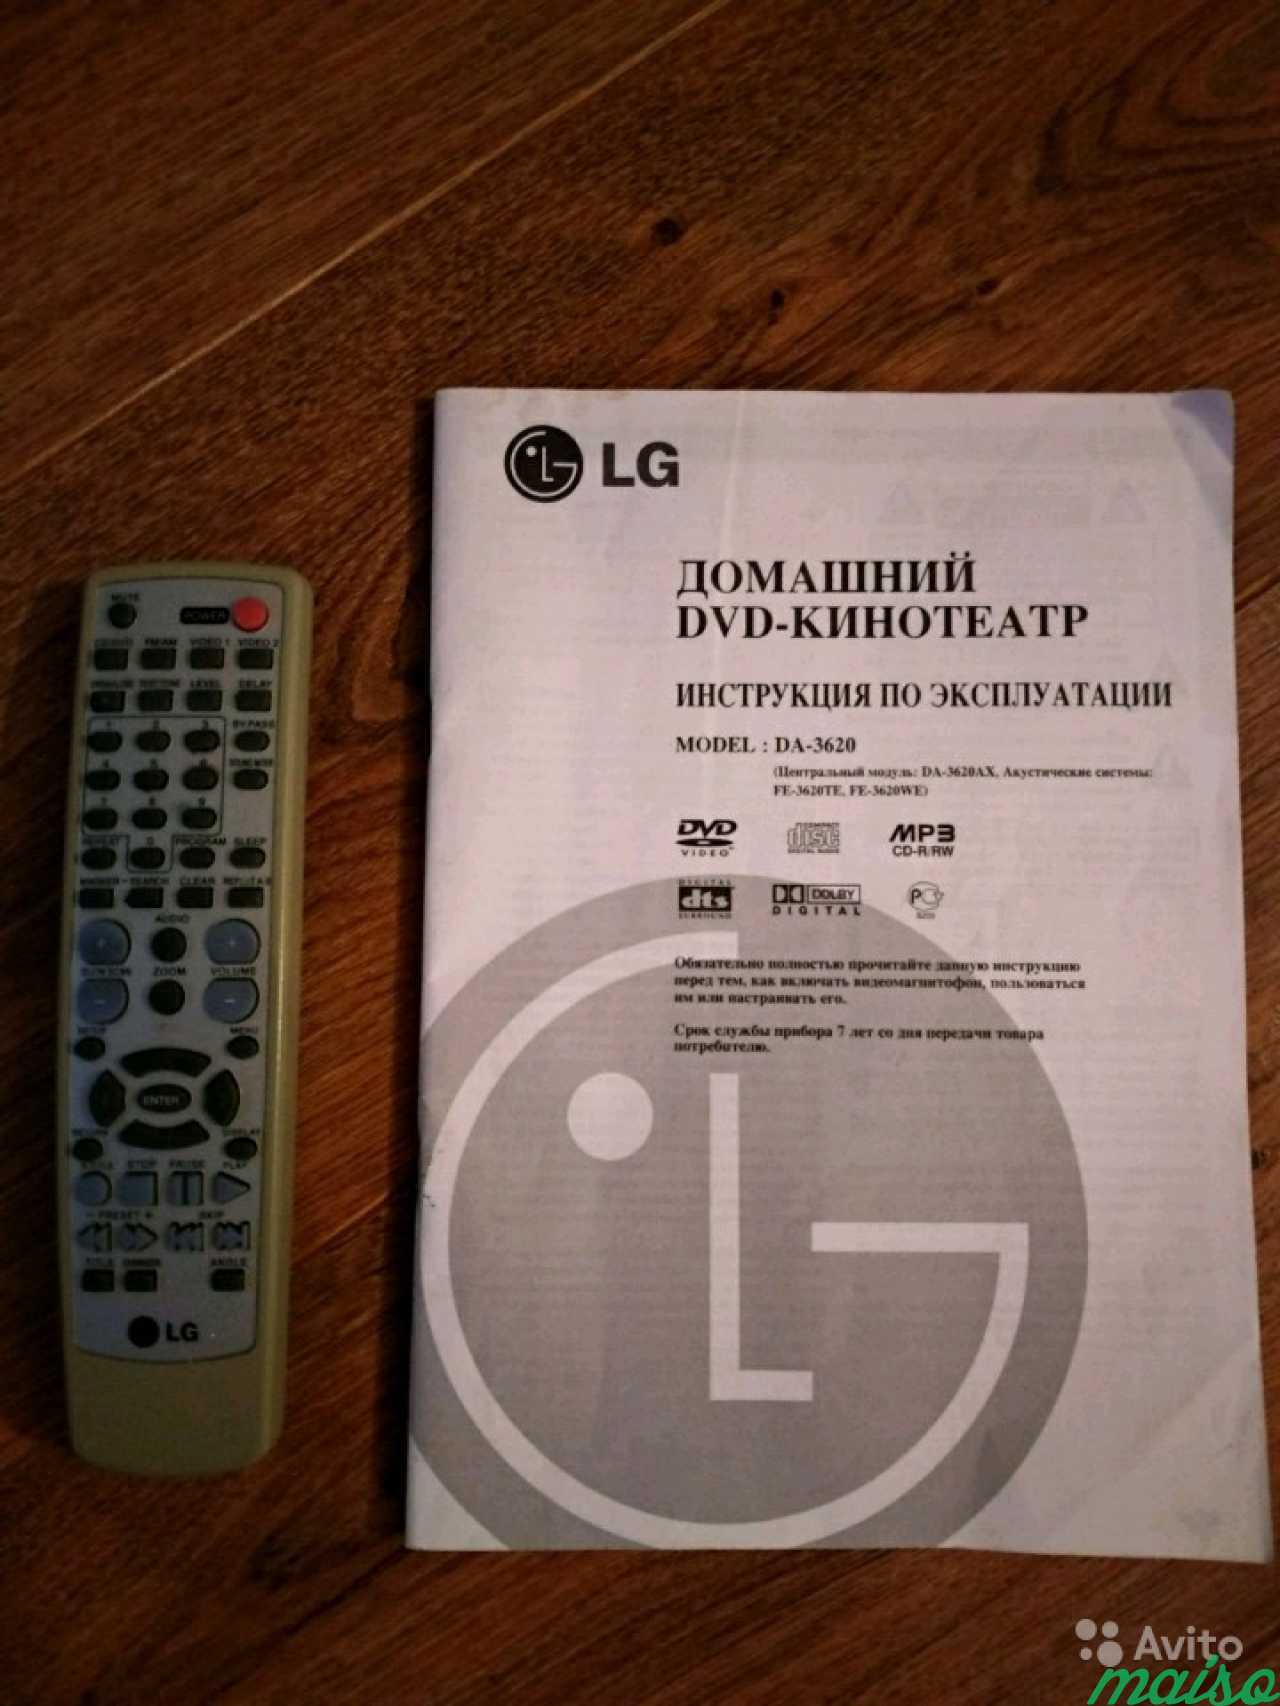 Домашний DVD-Кинотеатр LG DA-3620 в Санкт-Петербурге. Фото 4